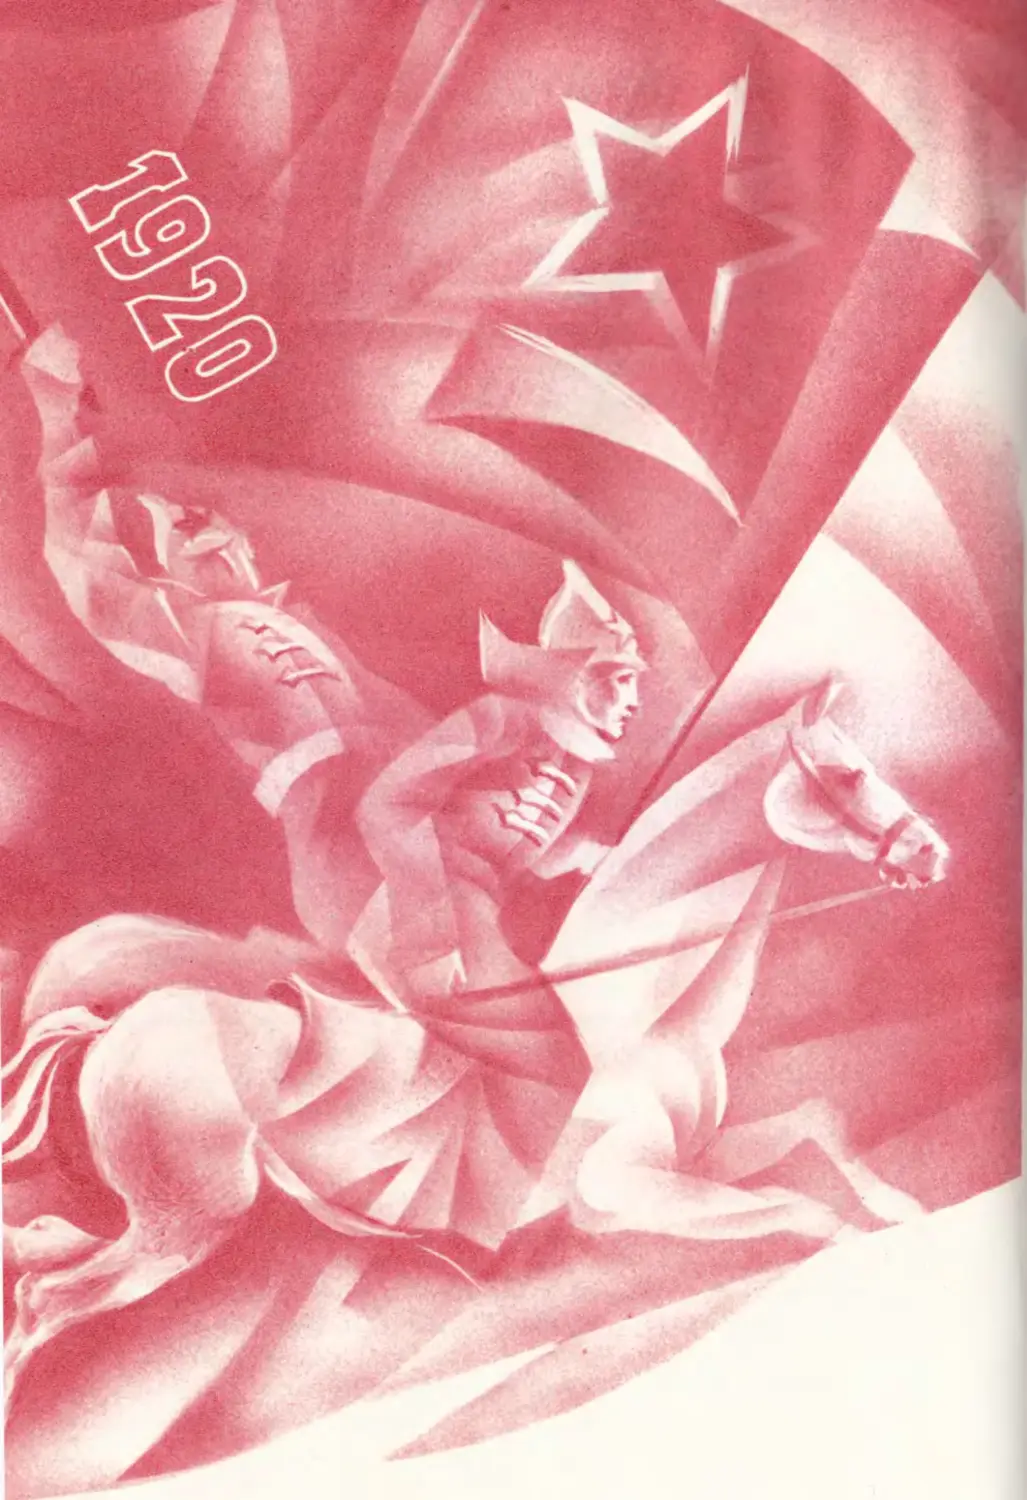 1920